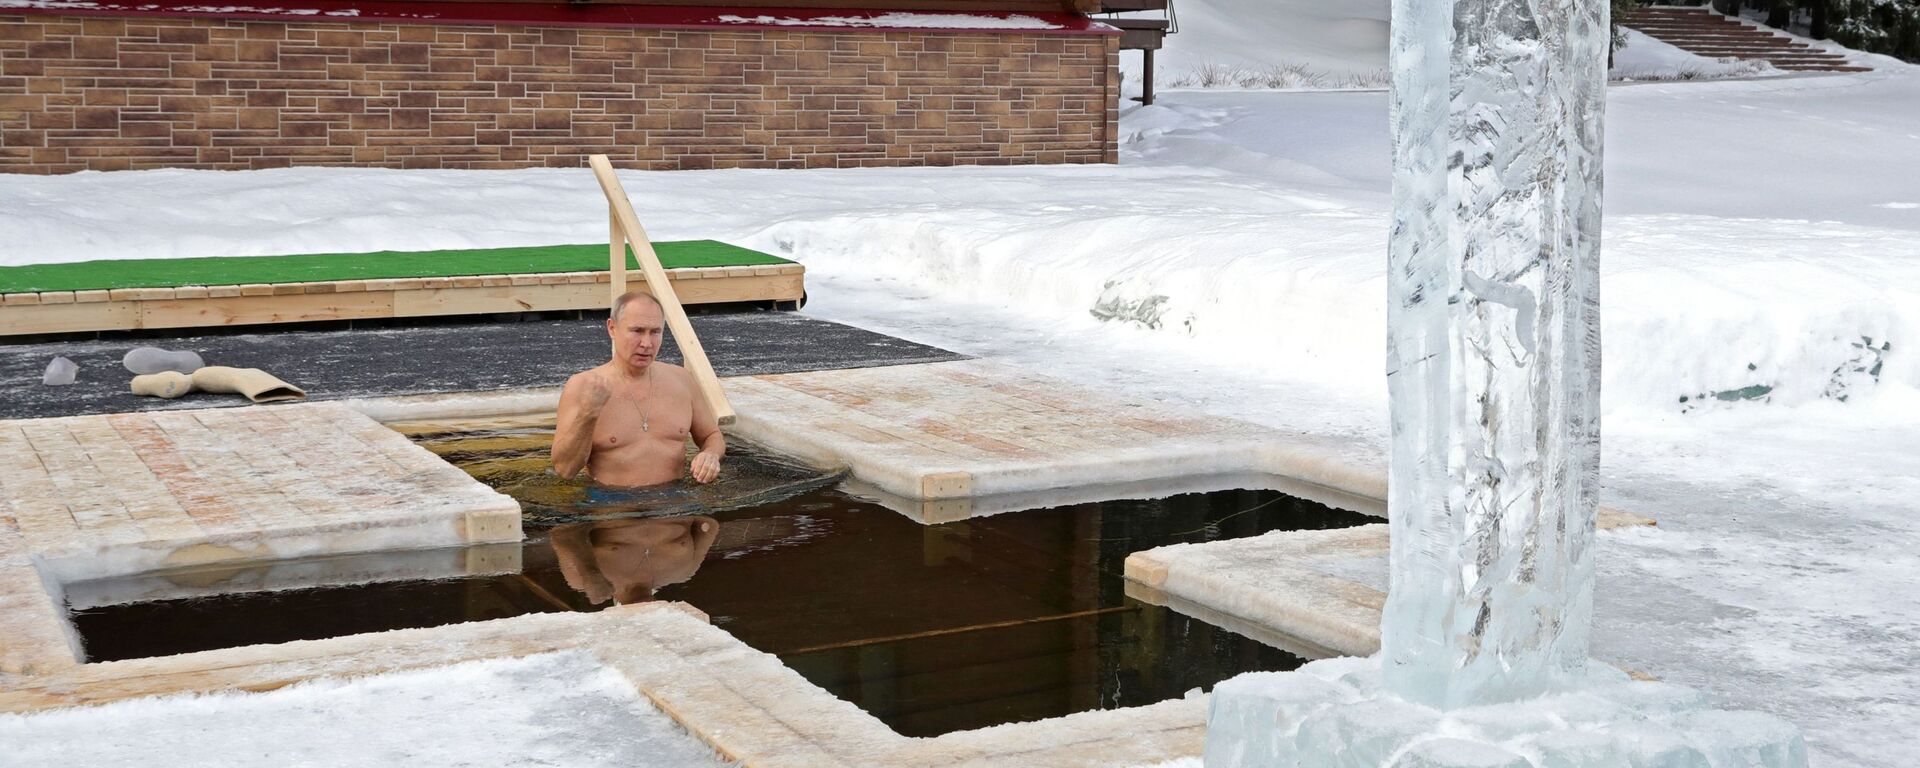 Председник Русије Владимир Путин зарања у ледену воду на Богојављење - Sputnik Србија, 1920, 21.01.2021